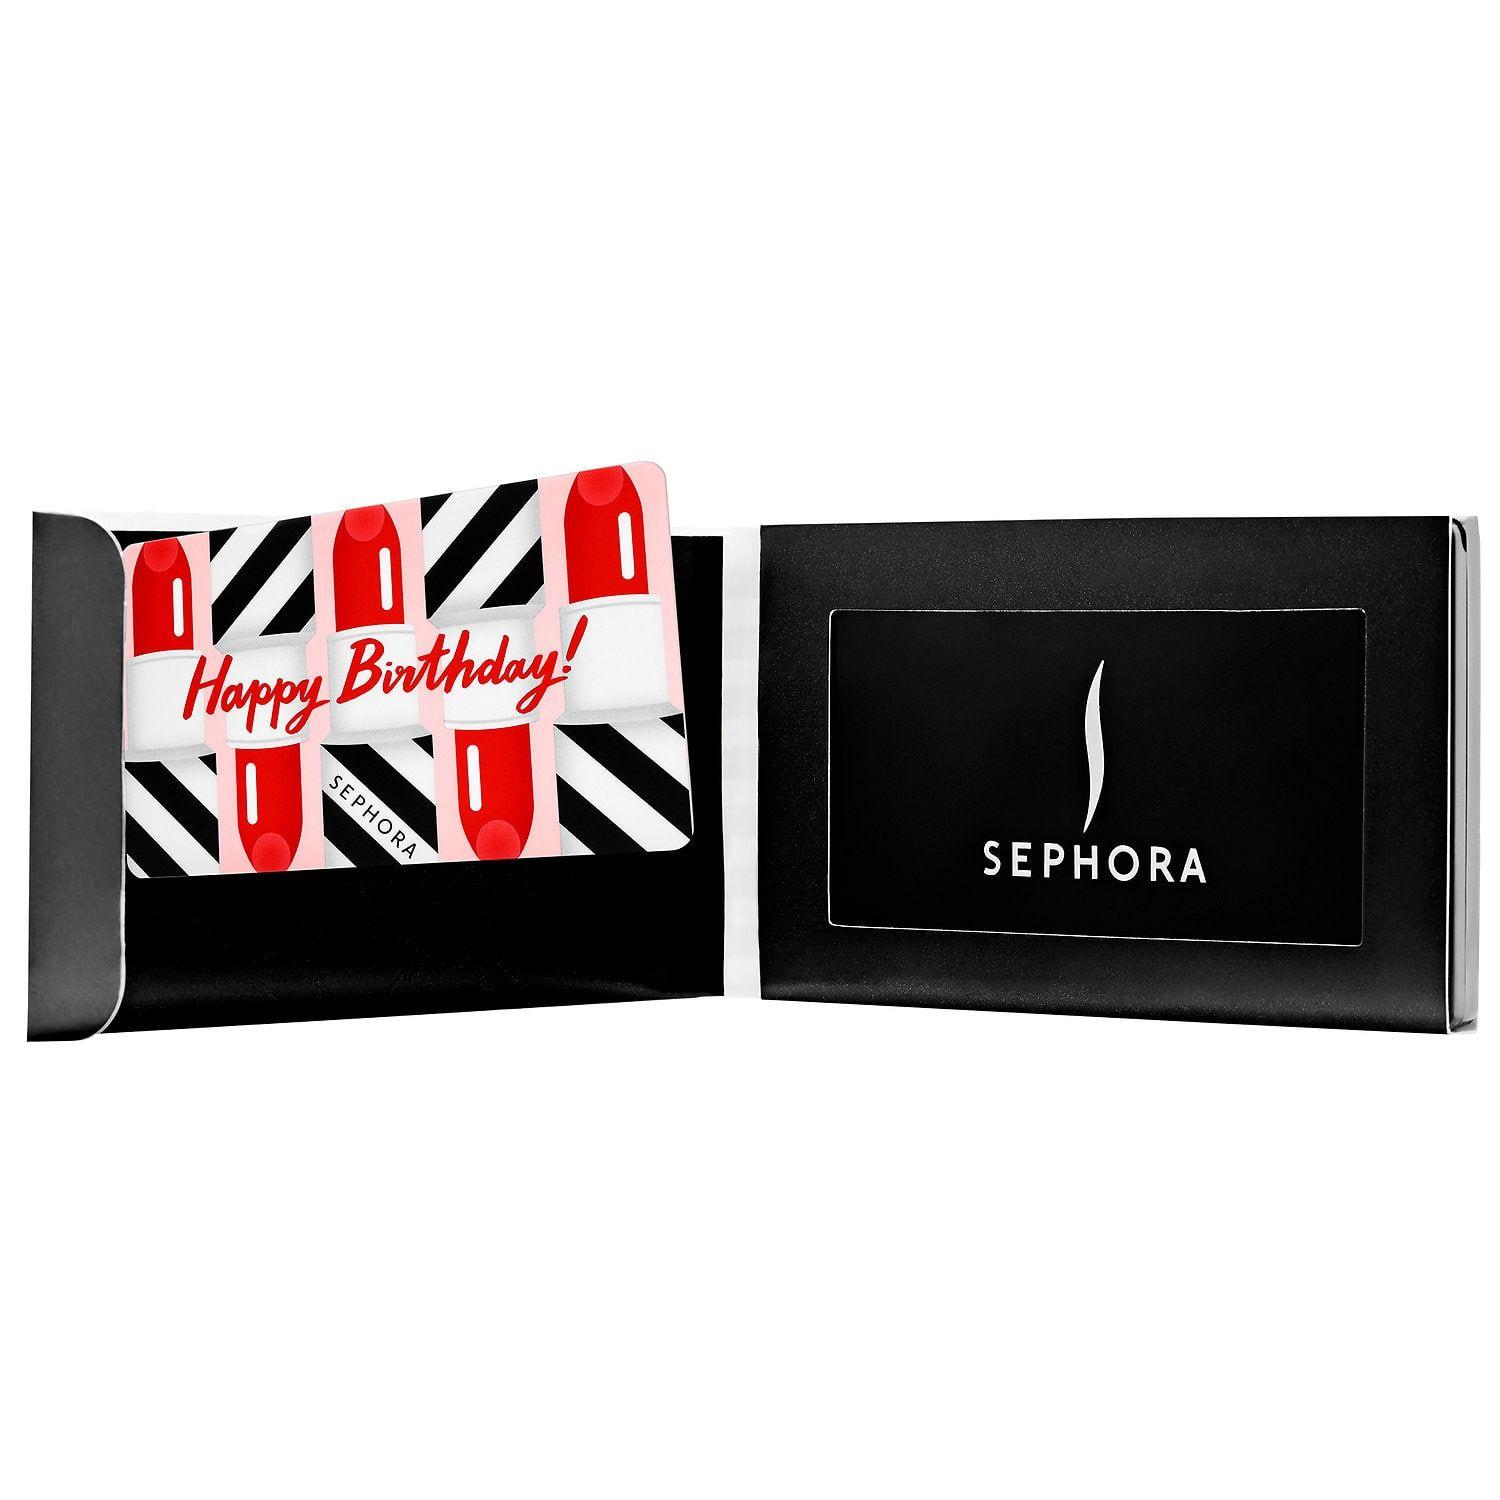 Sephora Logo - Happy Birthday Gift Card